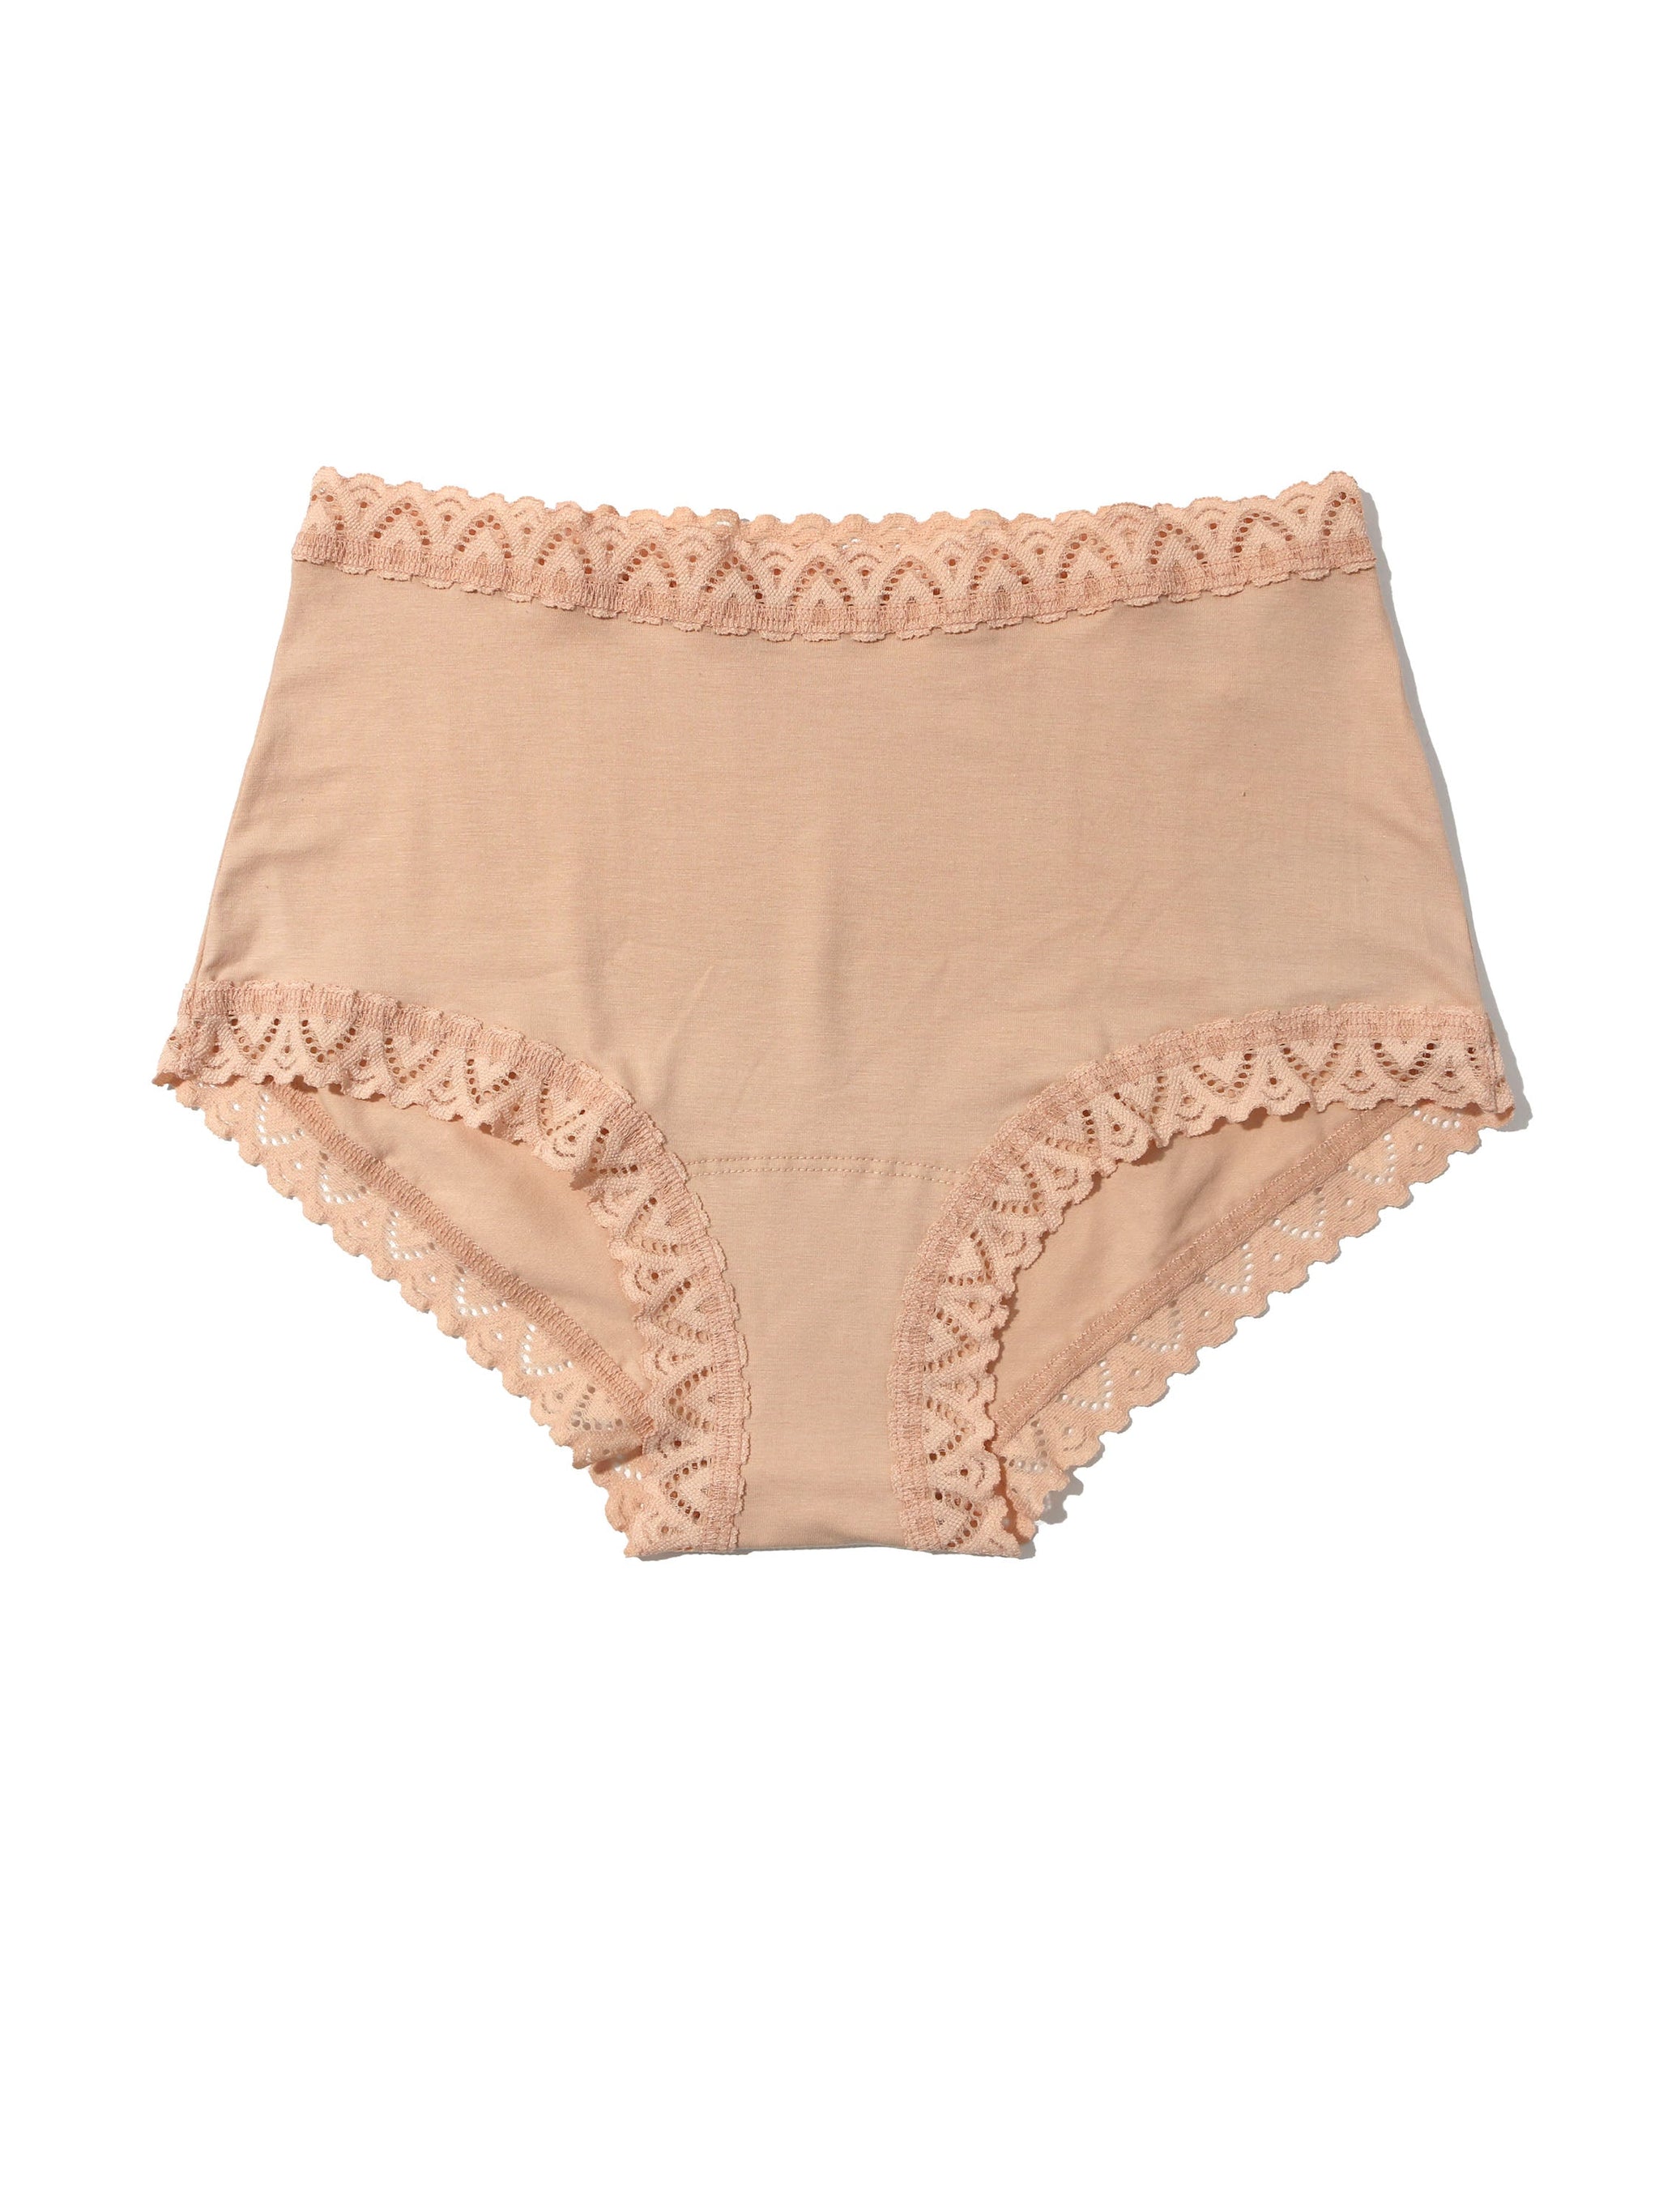 Women s Lace Ruffle Panties Layered Bottoms Boyshorts Mesh Cheeky Booty  Shorts Sexy Mini Pettipants Underwear